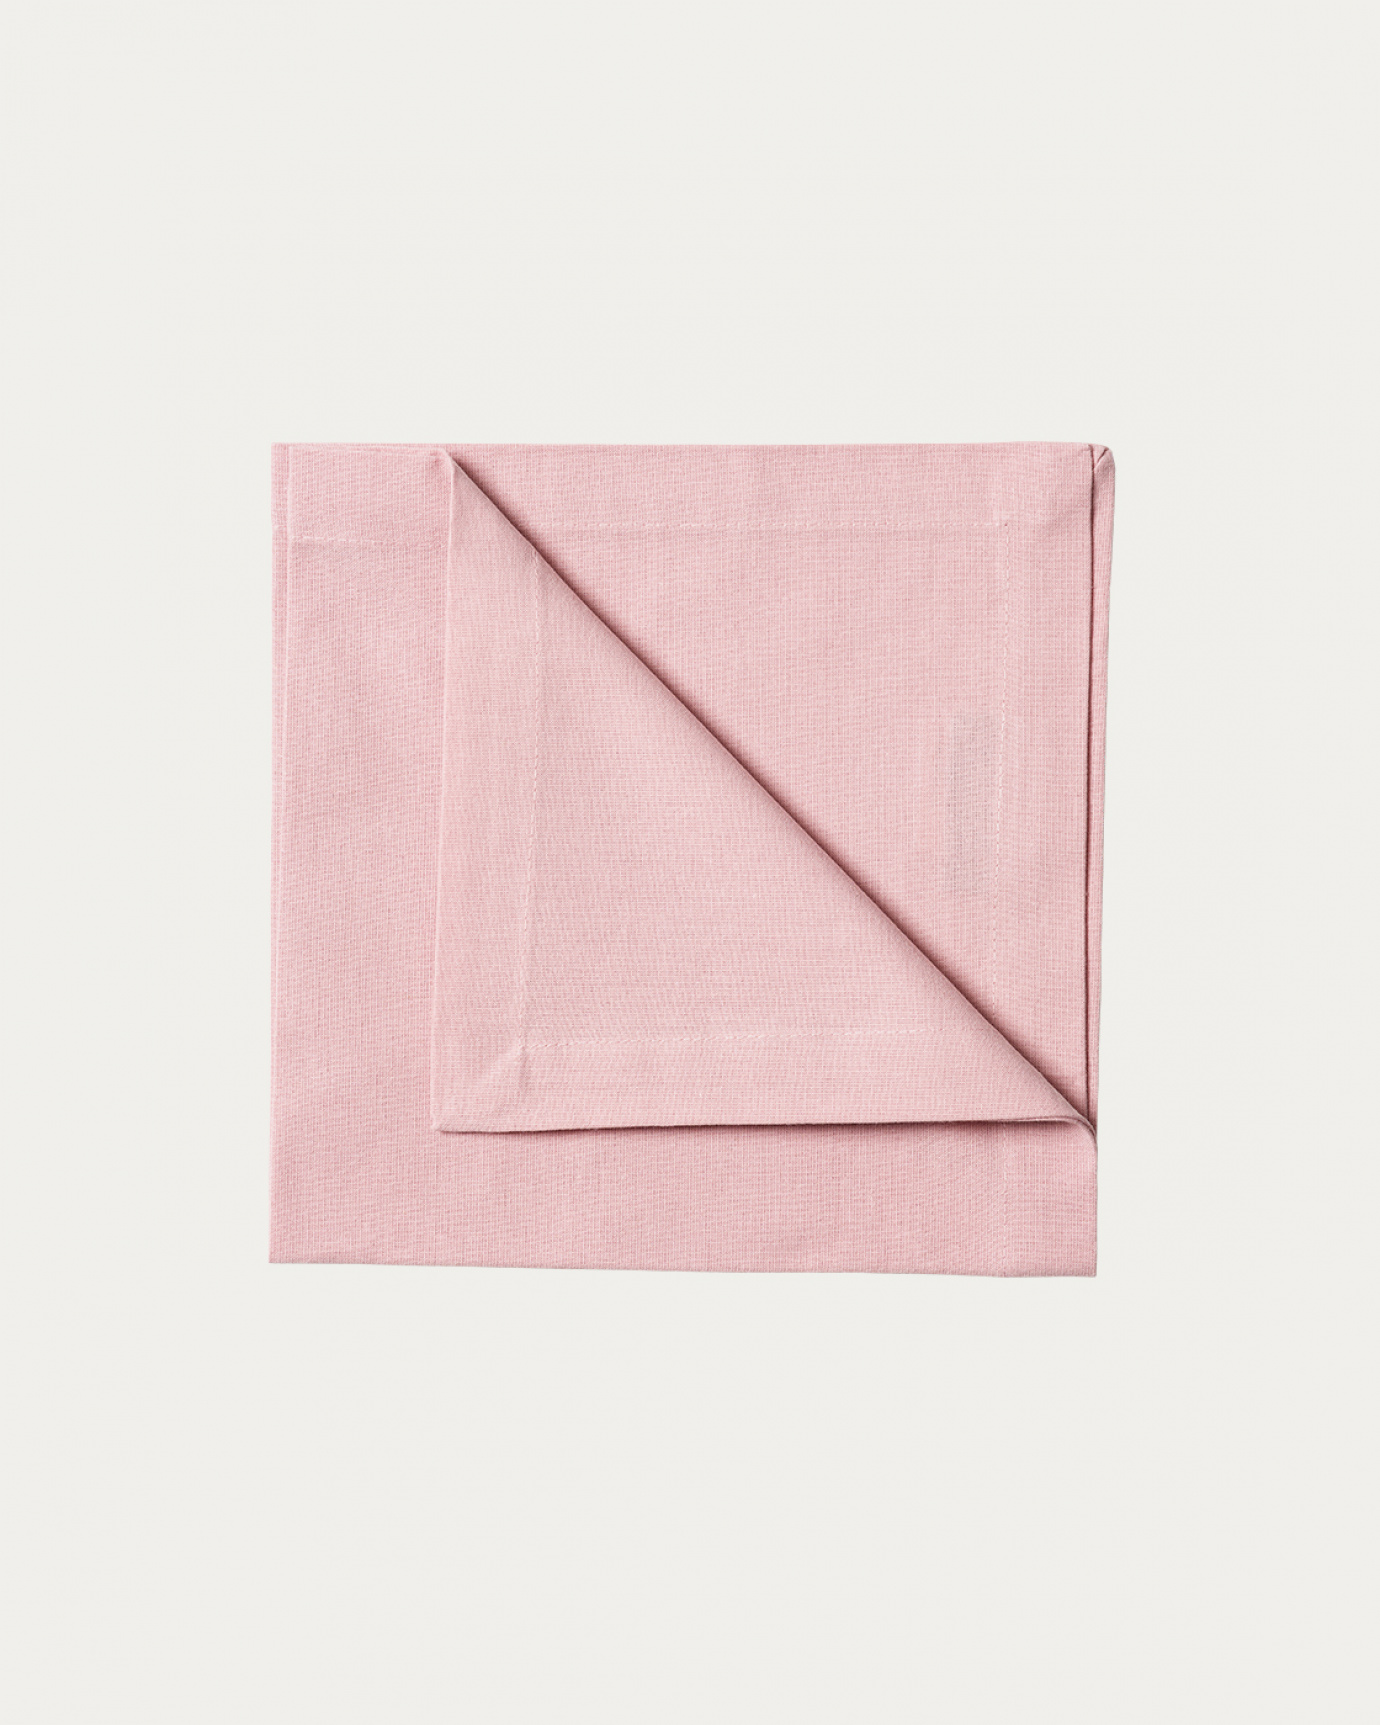 Image du produit serviette de table ROBERT rose poudré en coton doux de LINUM DESIGN. Taille 45 x 45 cm et vendu en lot de 4.